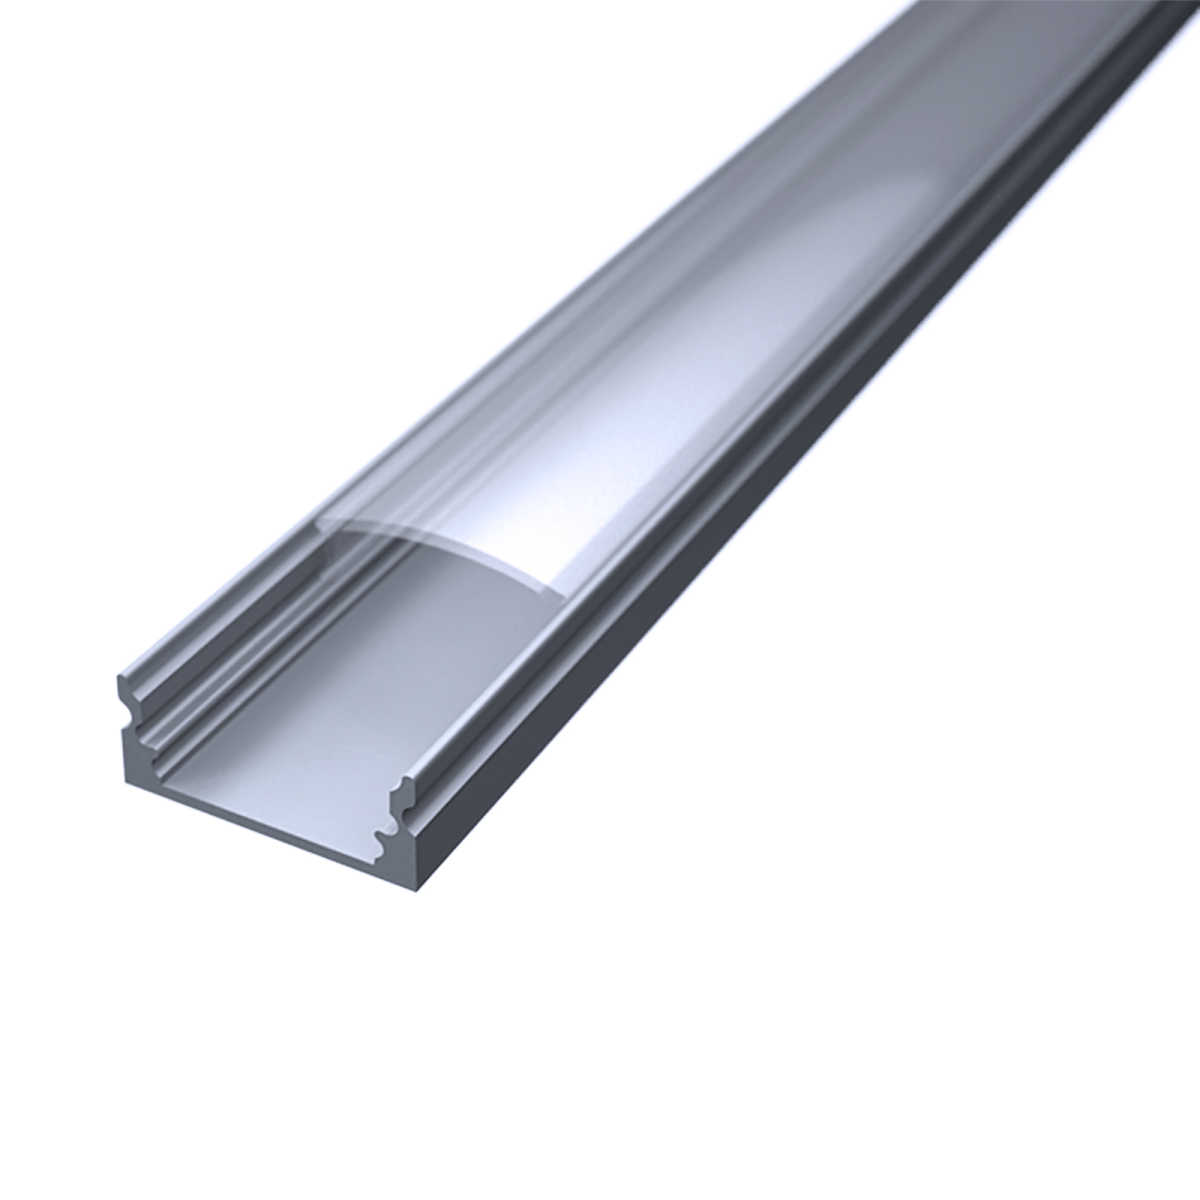 LED Flachprofil "Slim-Line" | Abdeckung transparent | Zuschnitt auf 129cm |